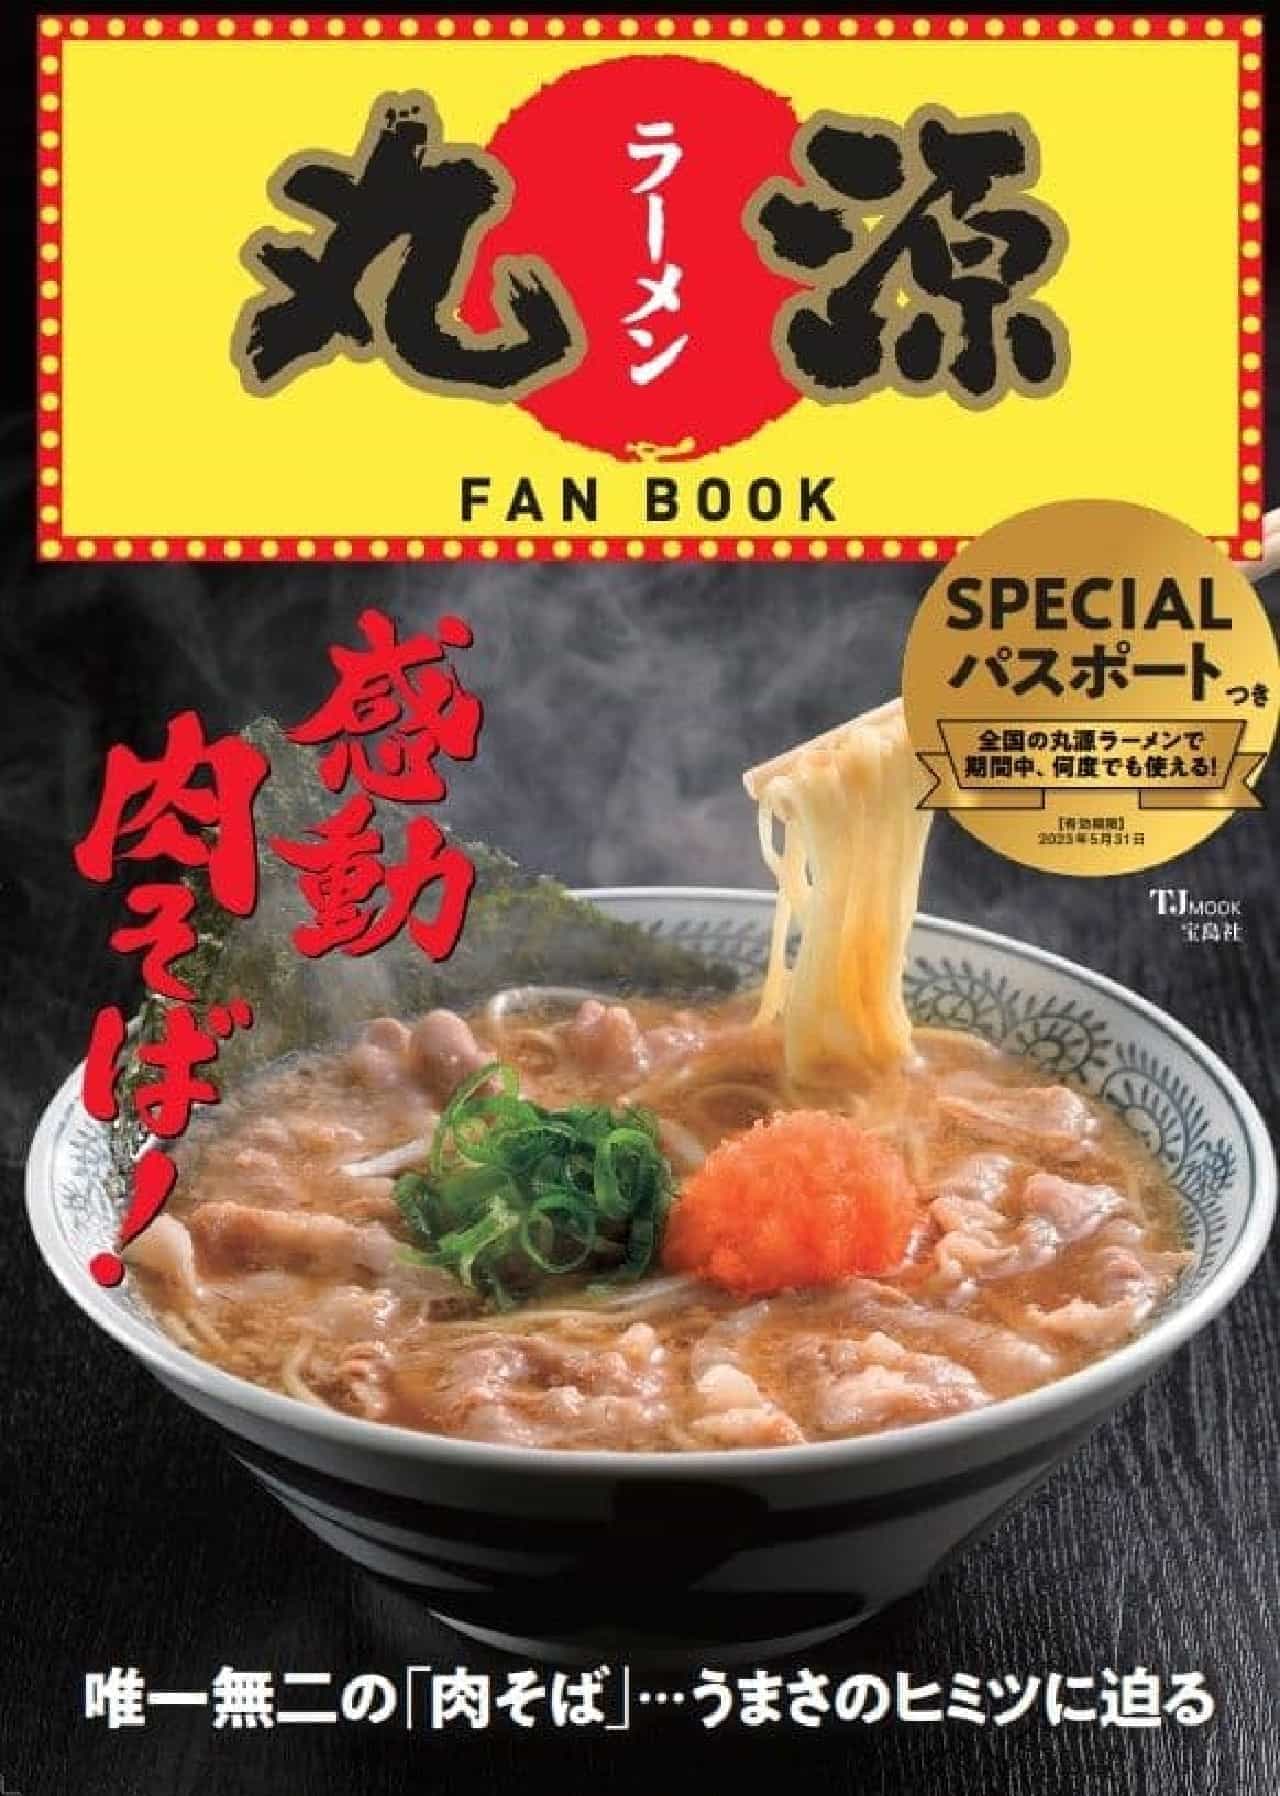 Marugen Ramen FAN BOOK" by Takarajimasya